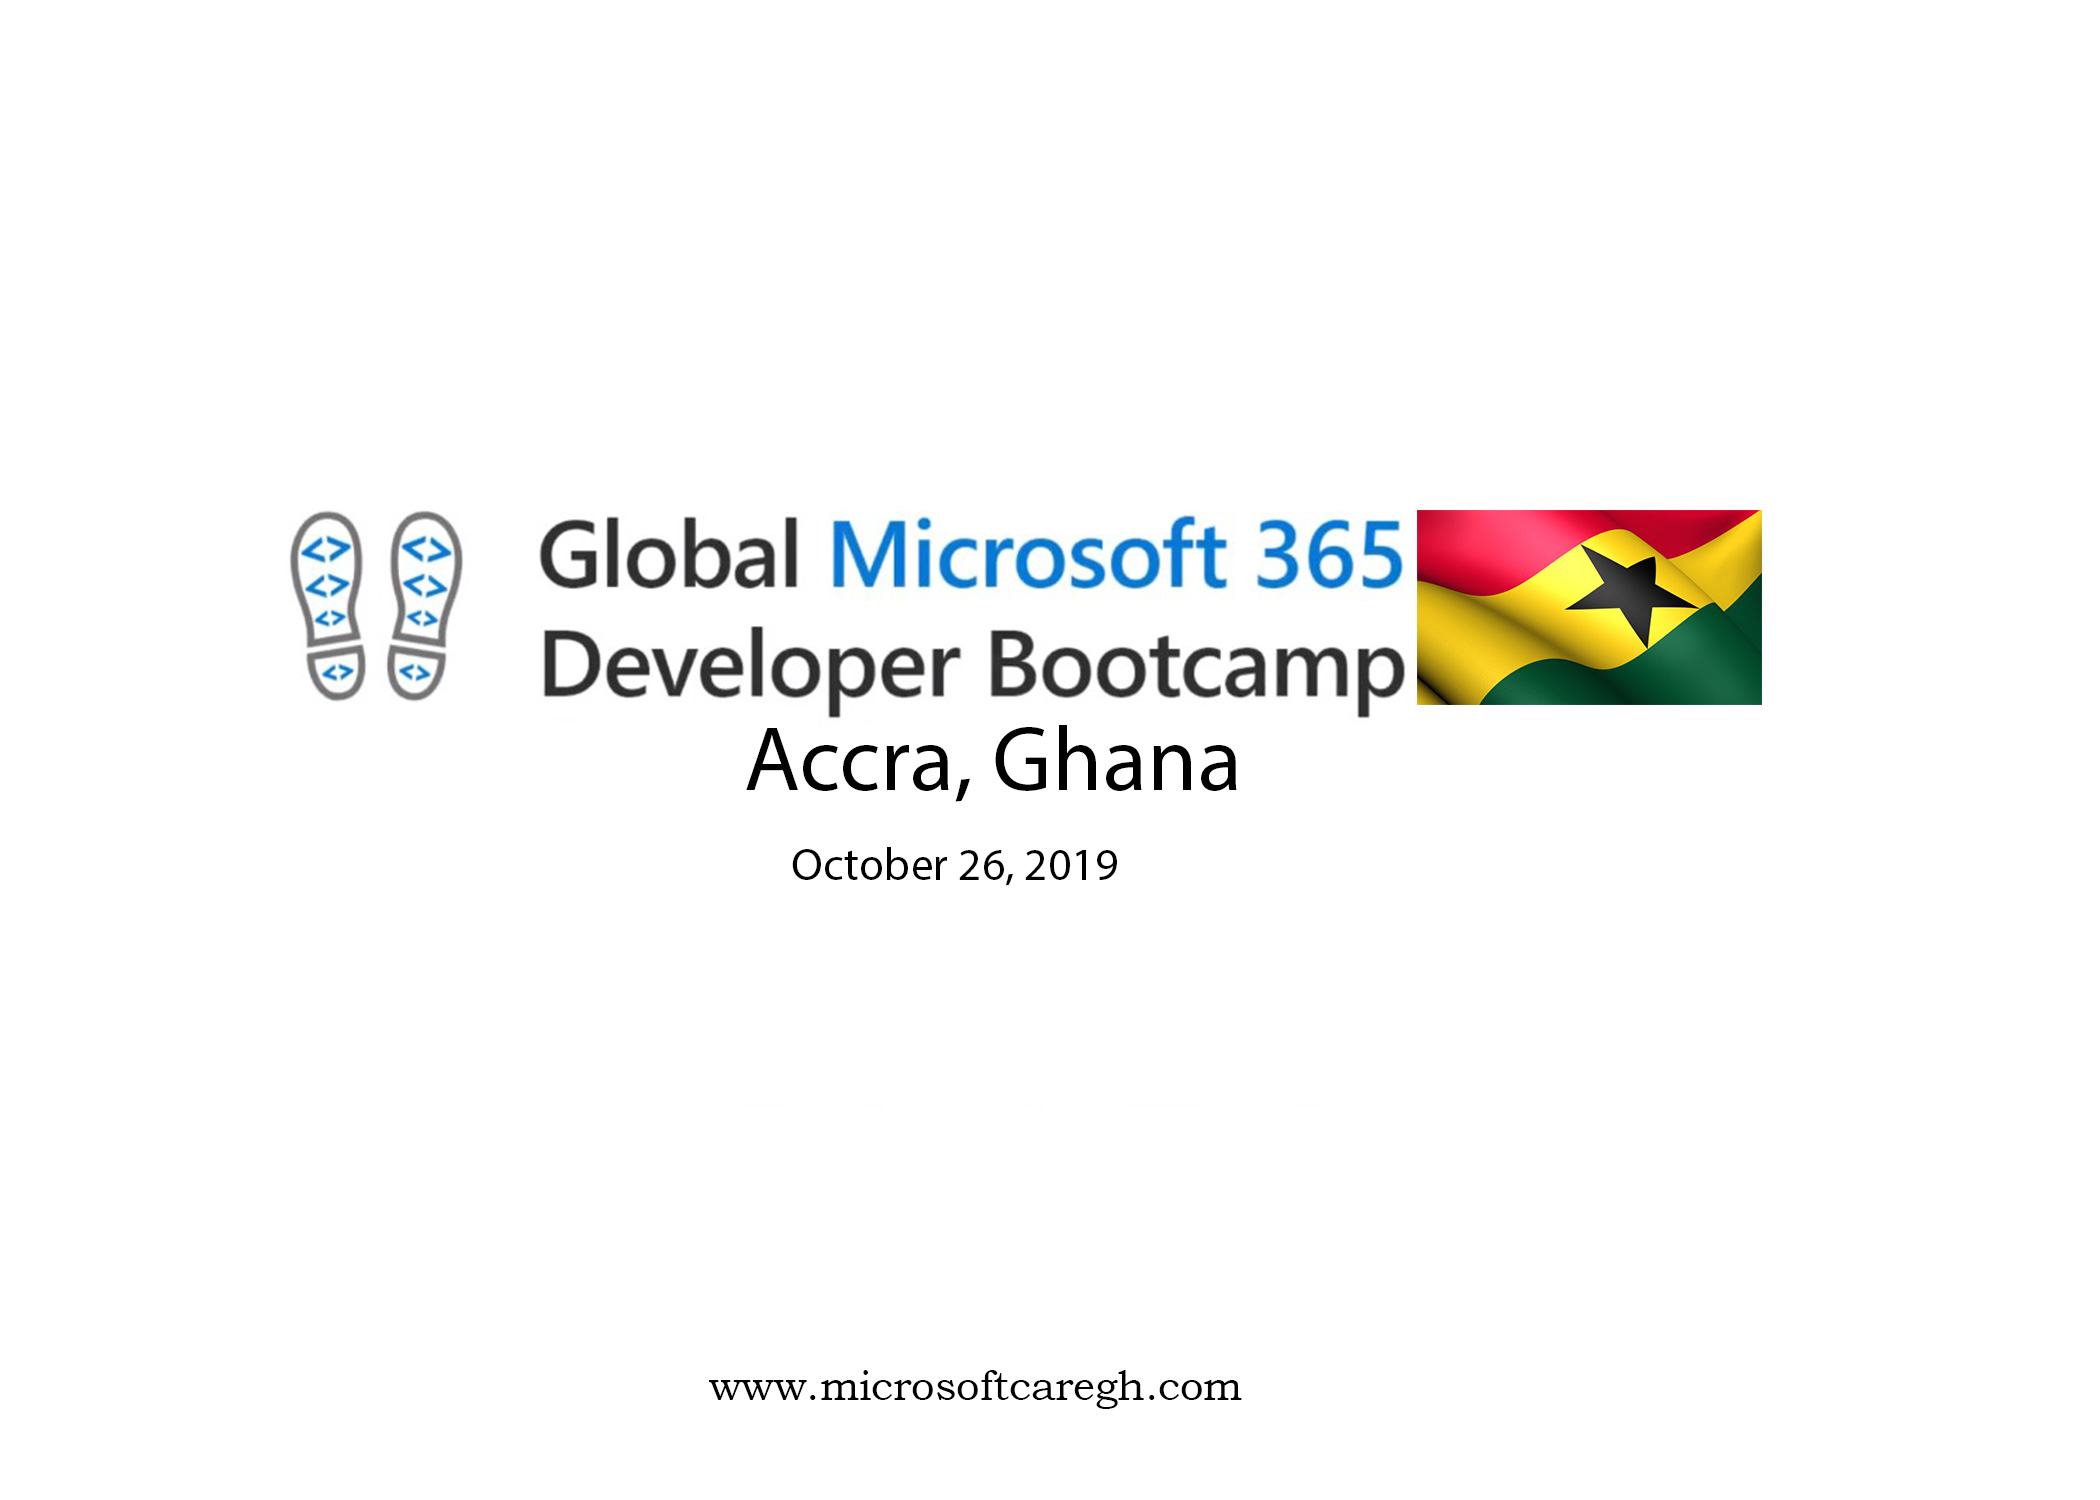 Global Microsoft 365 Developer Bootcamp 2019 Accra, Ghana